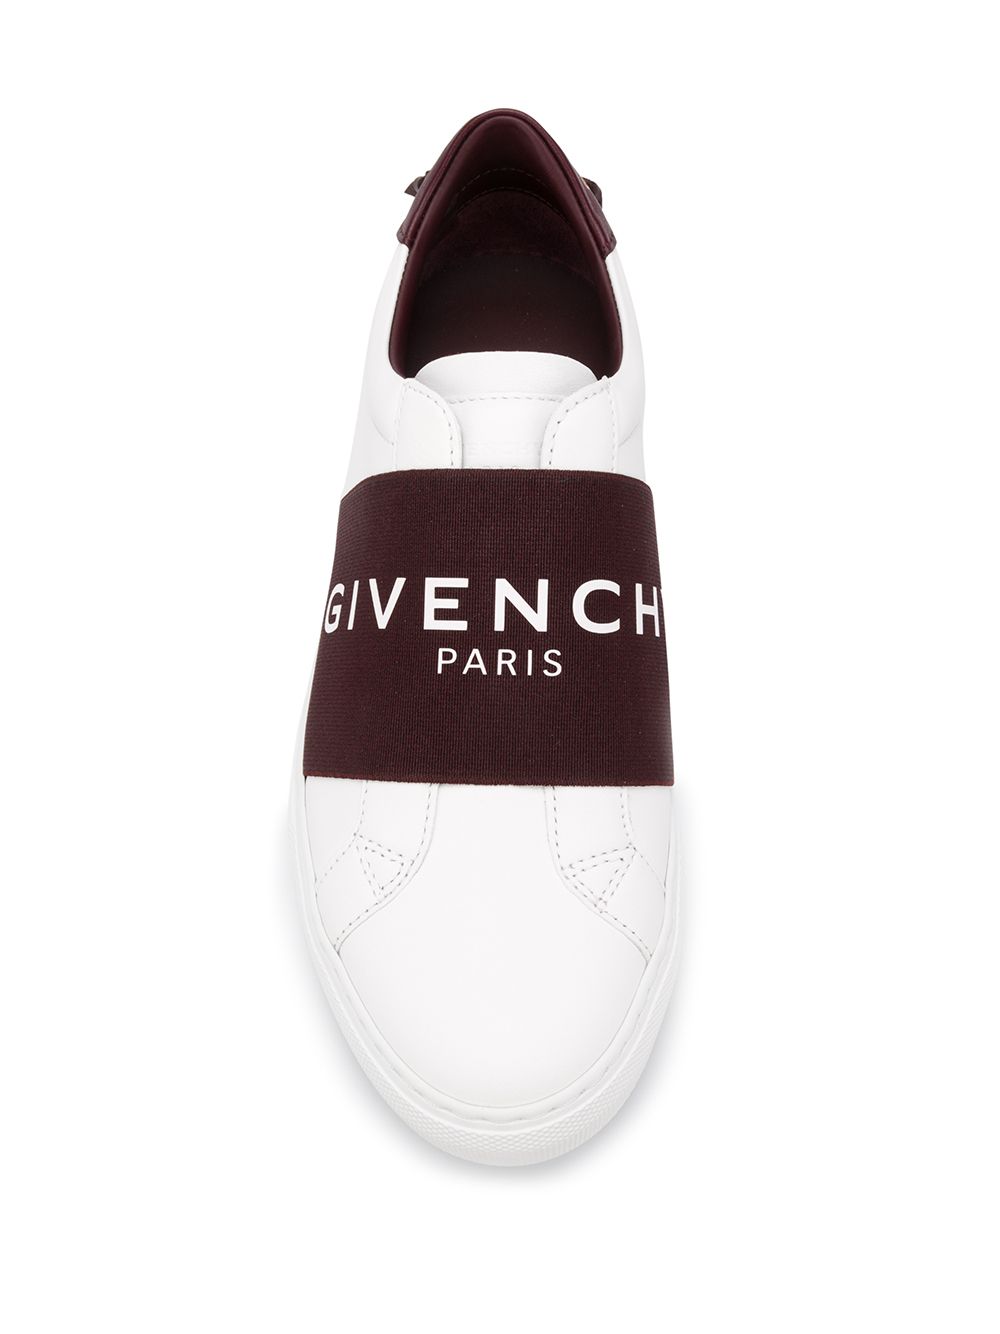 фото Givenchy кеды с ремешком givenchy paris